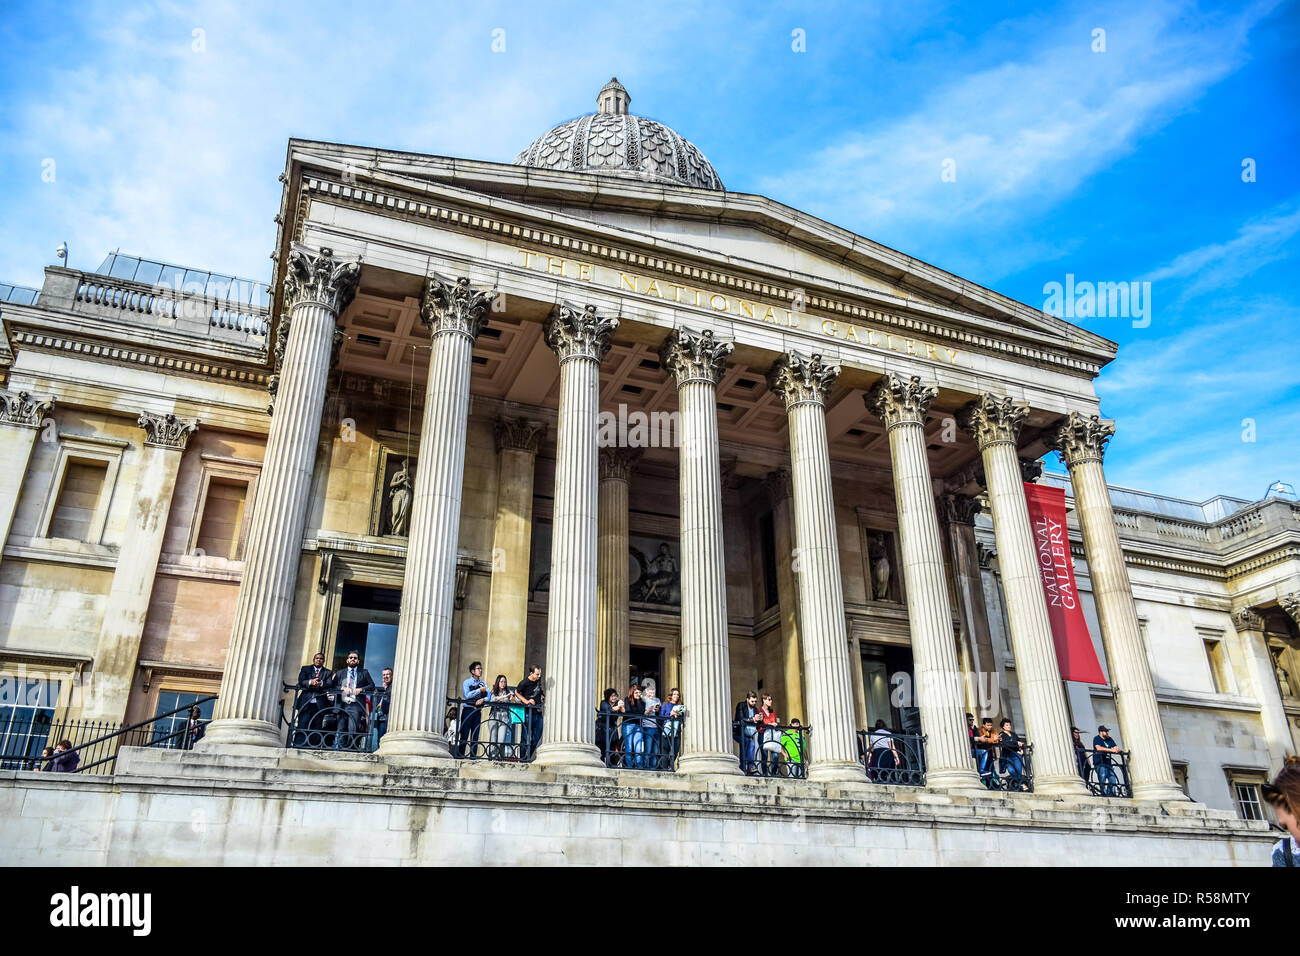 Les touristes traîner à l'entrée du musée National Gallery à Trafalgar Square dans la ville de Westminster, Londres, Angleterre, Royaume-Uni Banque D'Images